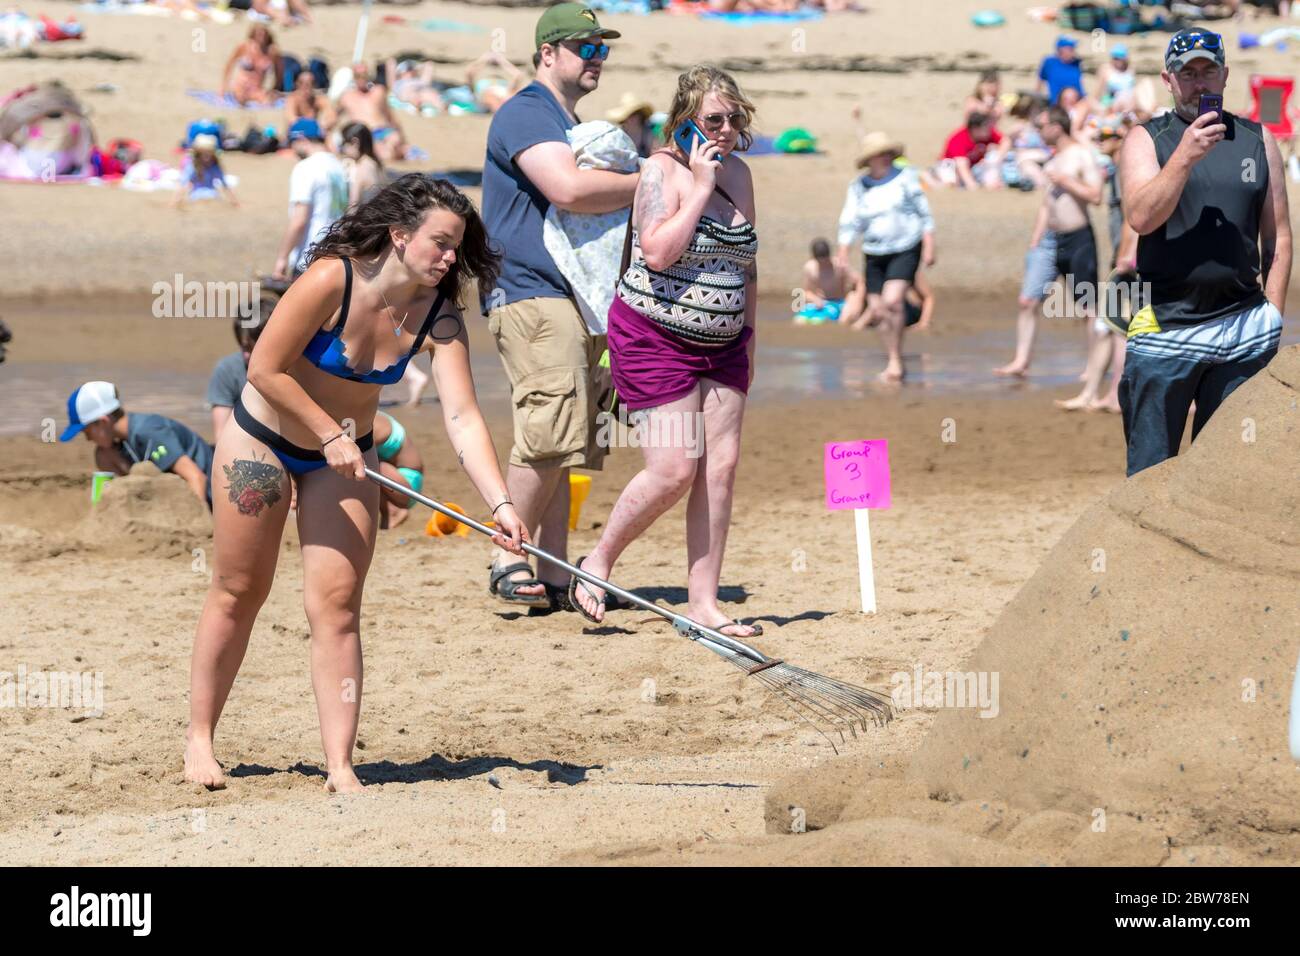 New River Beach, Nouveau-Brunswick, Canada - le 7 juillet 2018 : le concours annuel de sculpture sur sable. Une femme tatouée ramasse du sable à côté d'une sculpture de sable. Banque D'Images